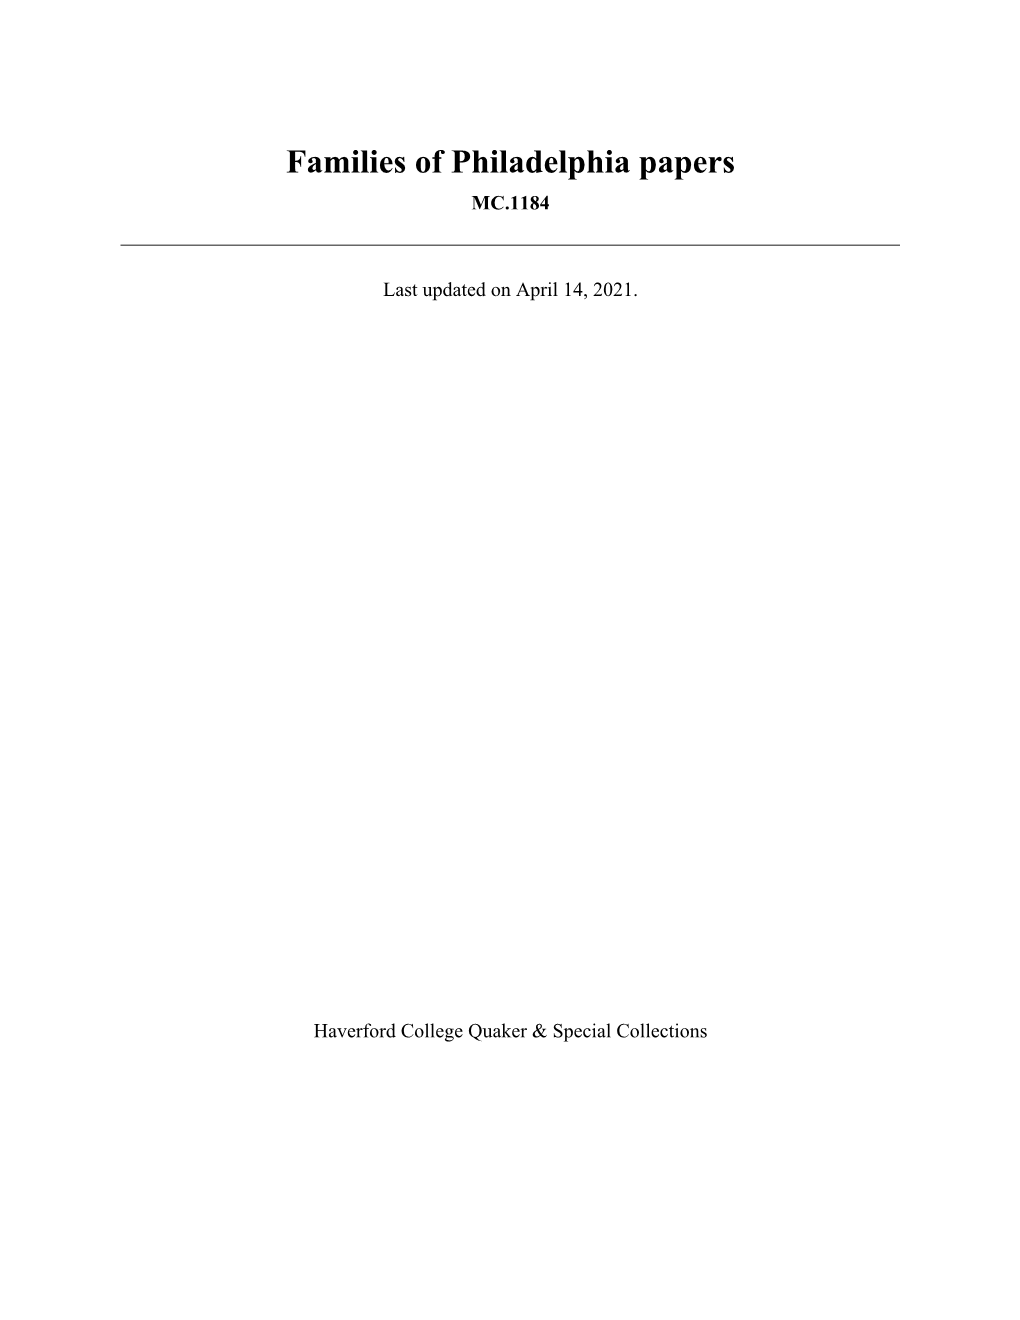 Families of Philadelphia Papers MC.1184